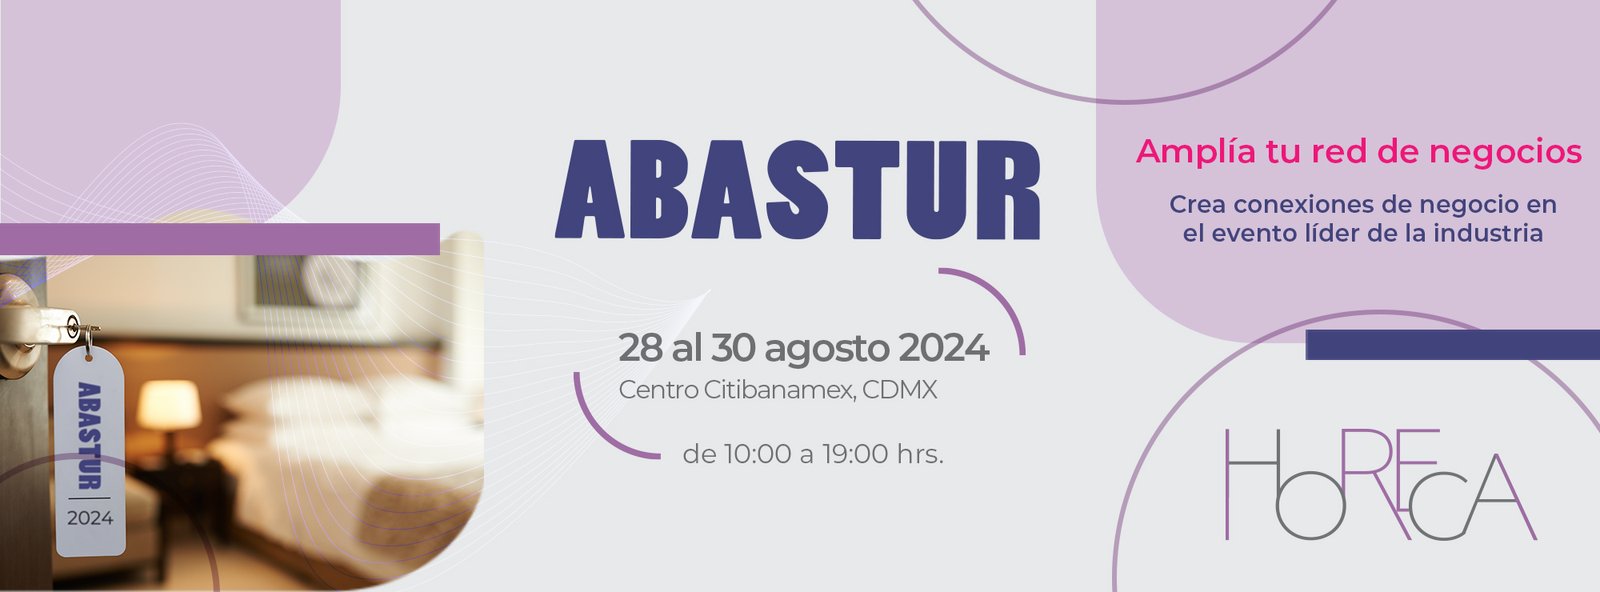 Evento Abastur 2024 CDMX